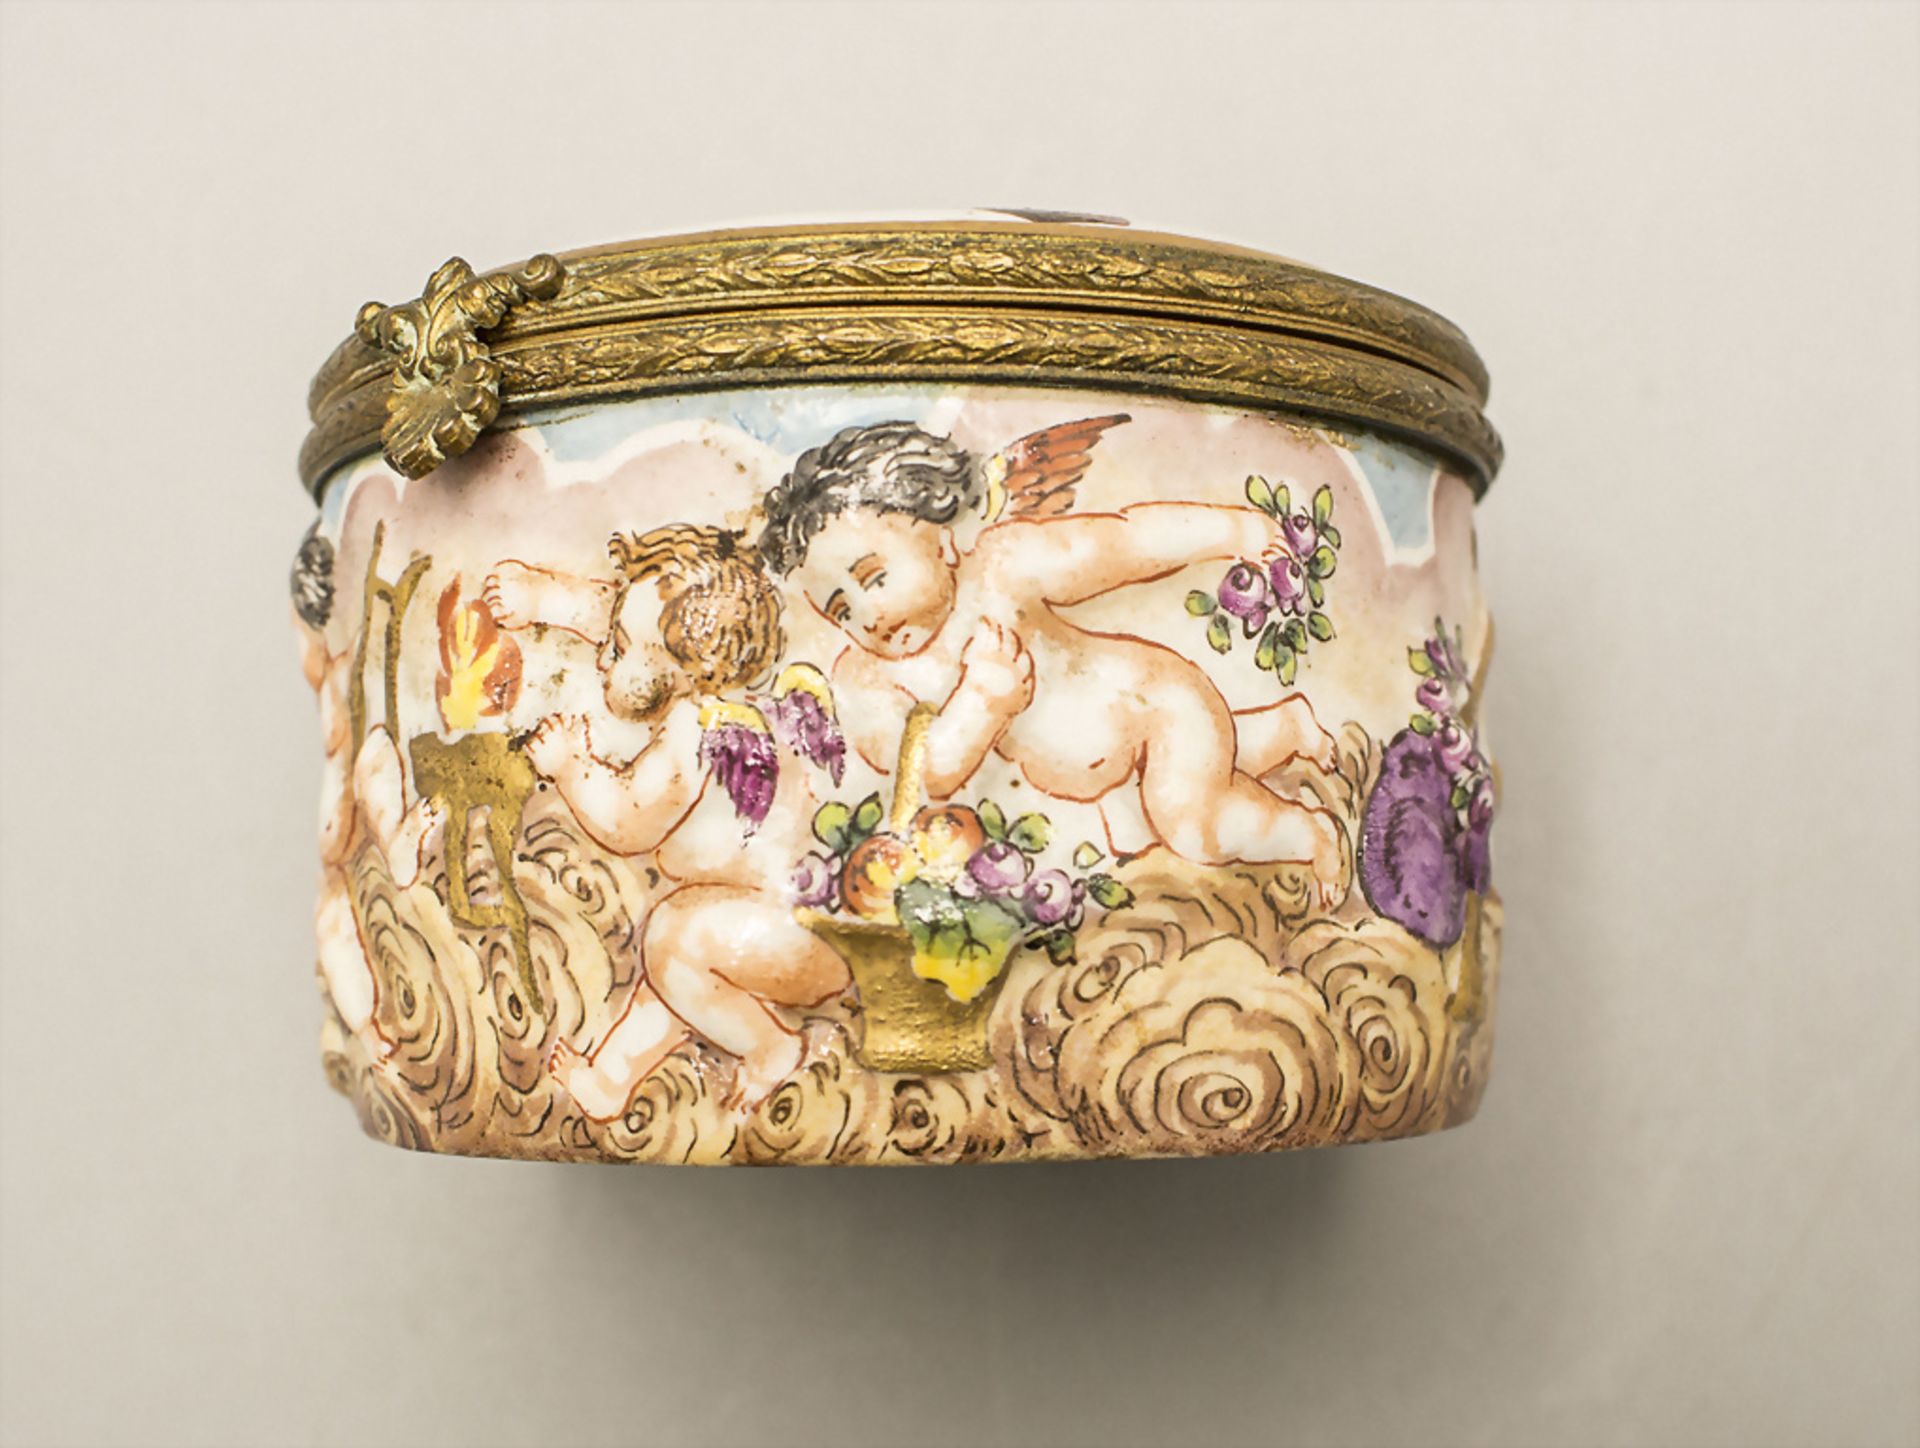 Runde Deckeldose mit Putten / A lidded box with cherubs, Neapel-Marke, Mitte 19. Jh. - Bild 8 aus 9